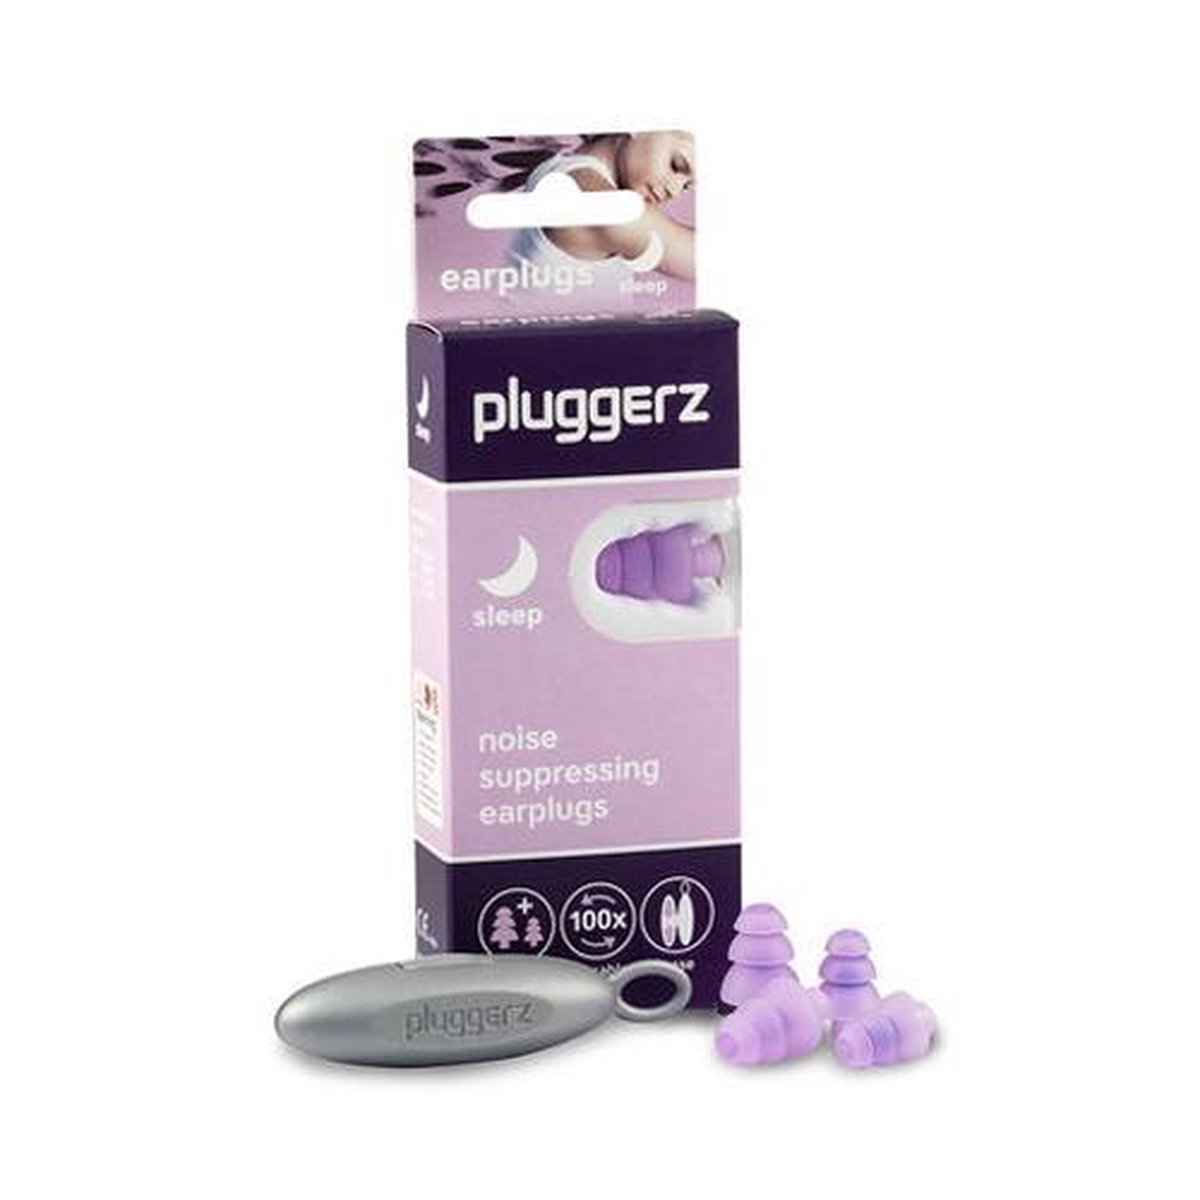 Pluggerz earplugs Sleep - Festival oordopjes - Oordoppen voor slapen - Zacht siliconen materiaal - Dempt snurkgeluid - Pluggerz